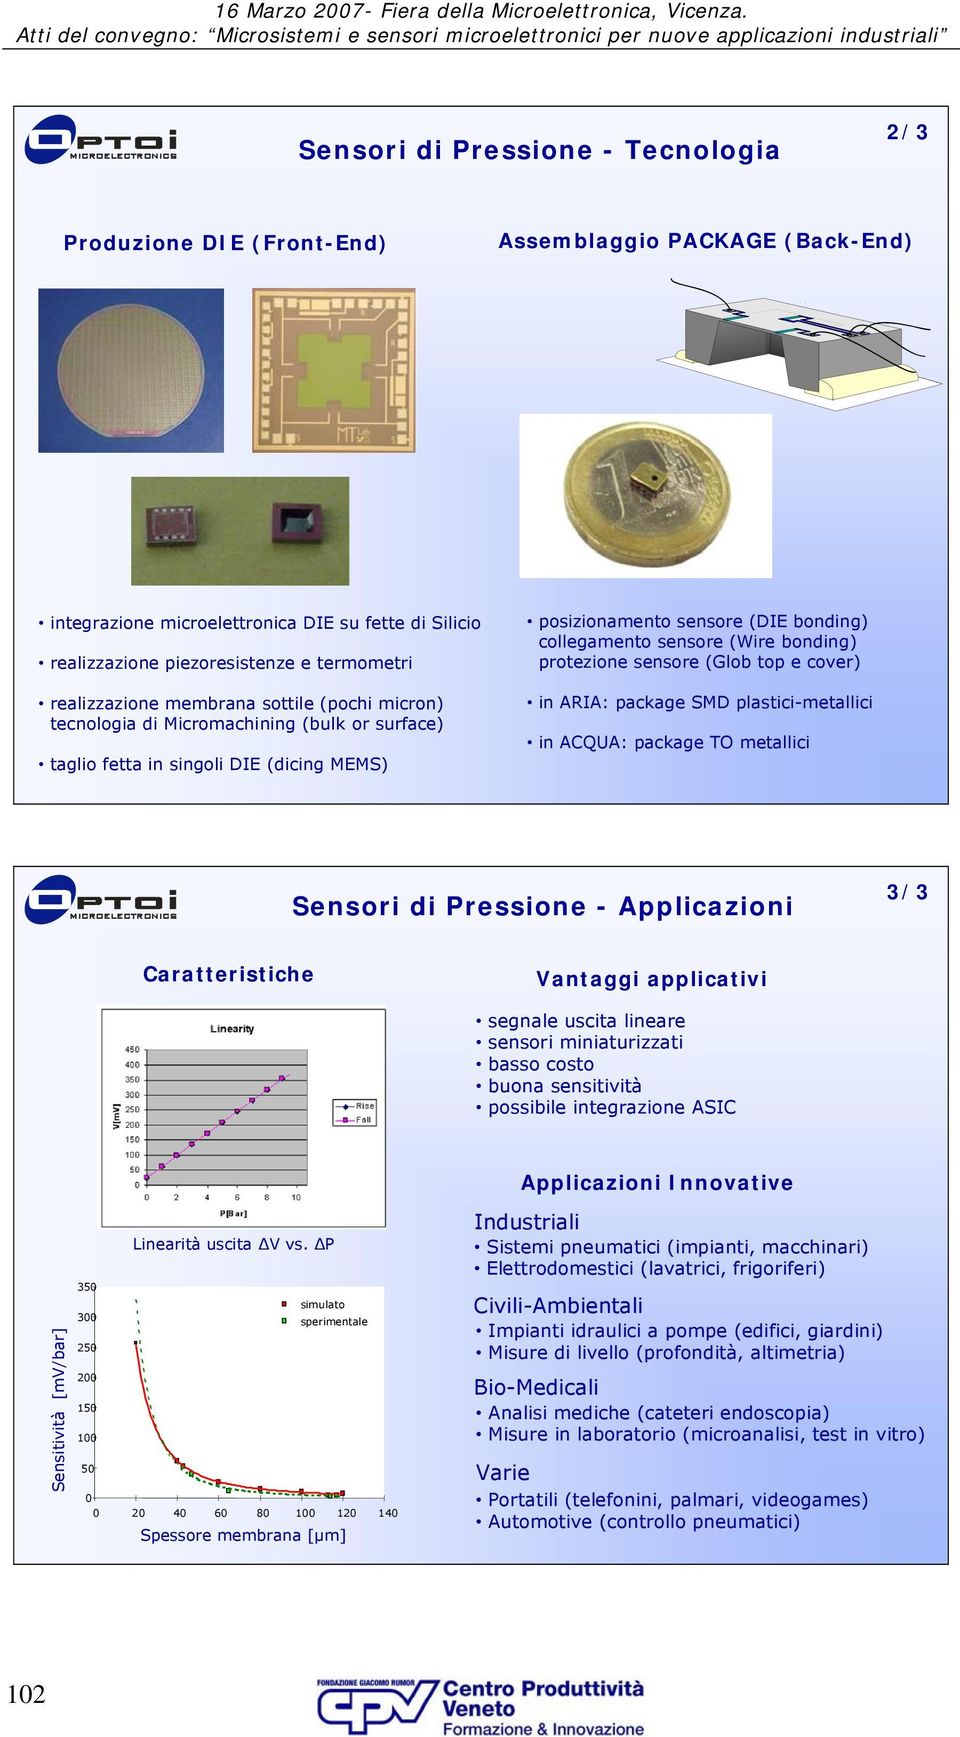 bonding) protezione sensore (Glob top e cover) in ARIA: package SMD plastici-metallici in ACQUA: package TO metallici Sensori di Pressione - Applicazioni 3/3 Caratteristiche Vantaggi applicativi